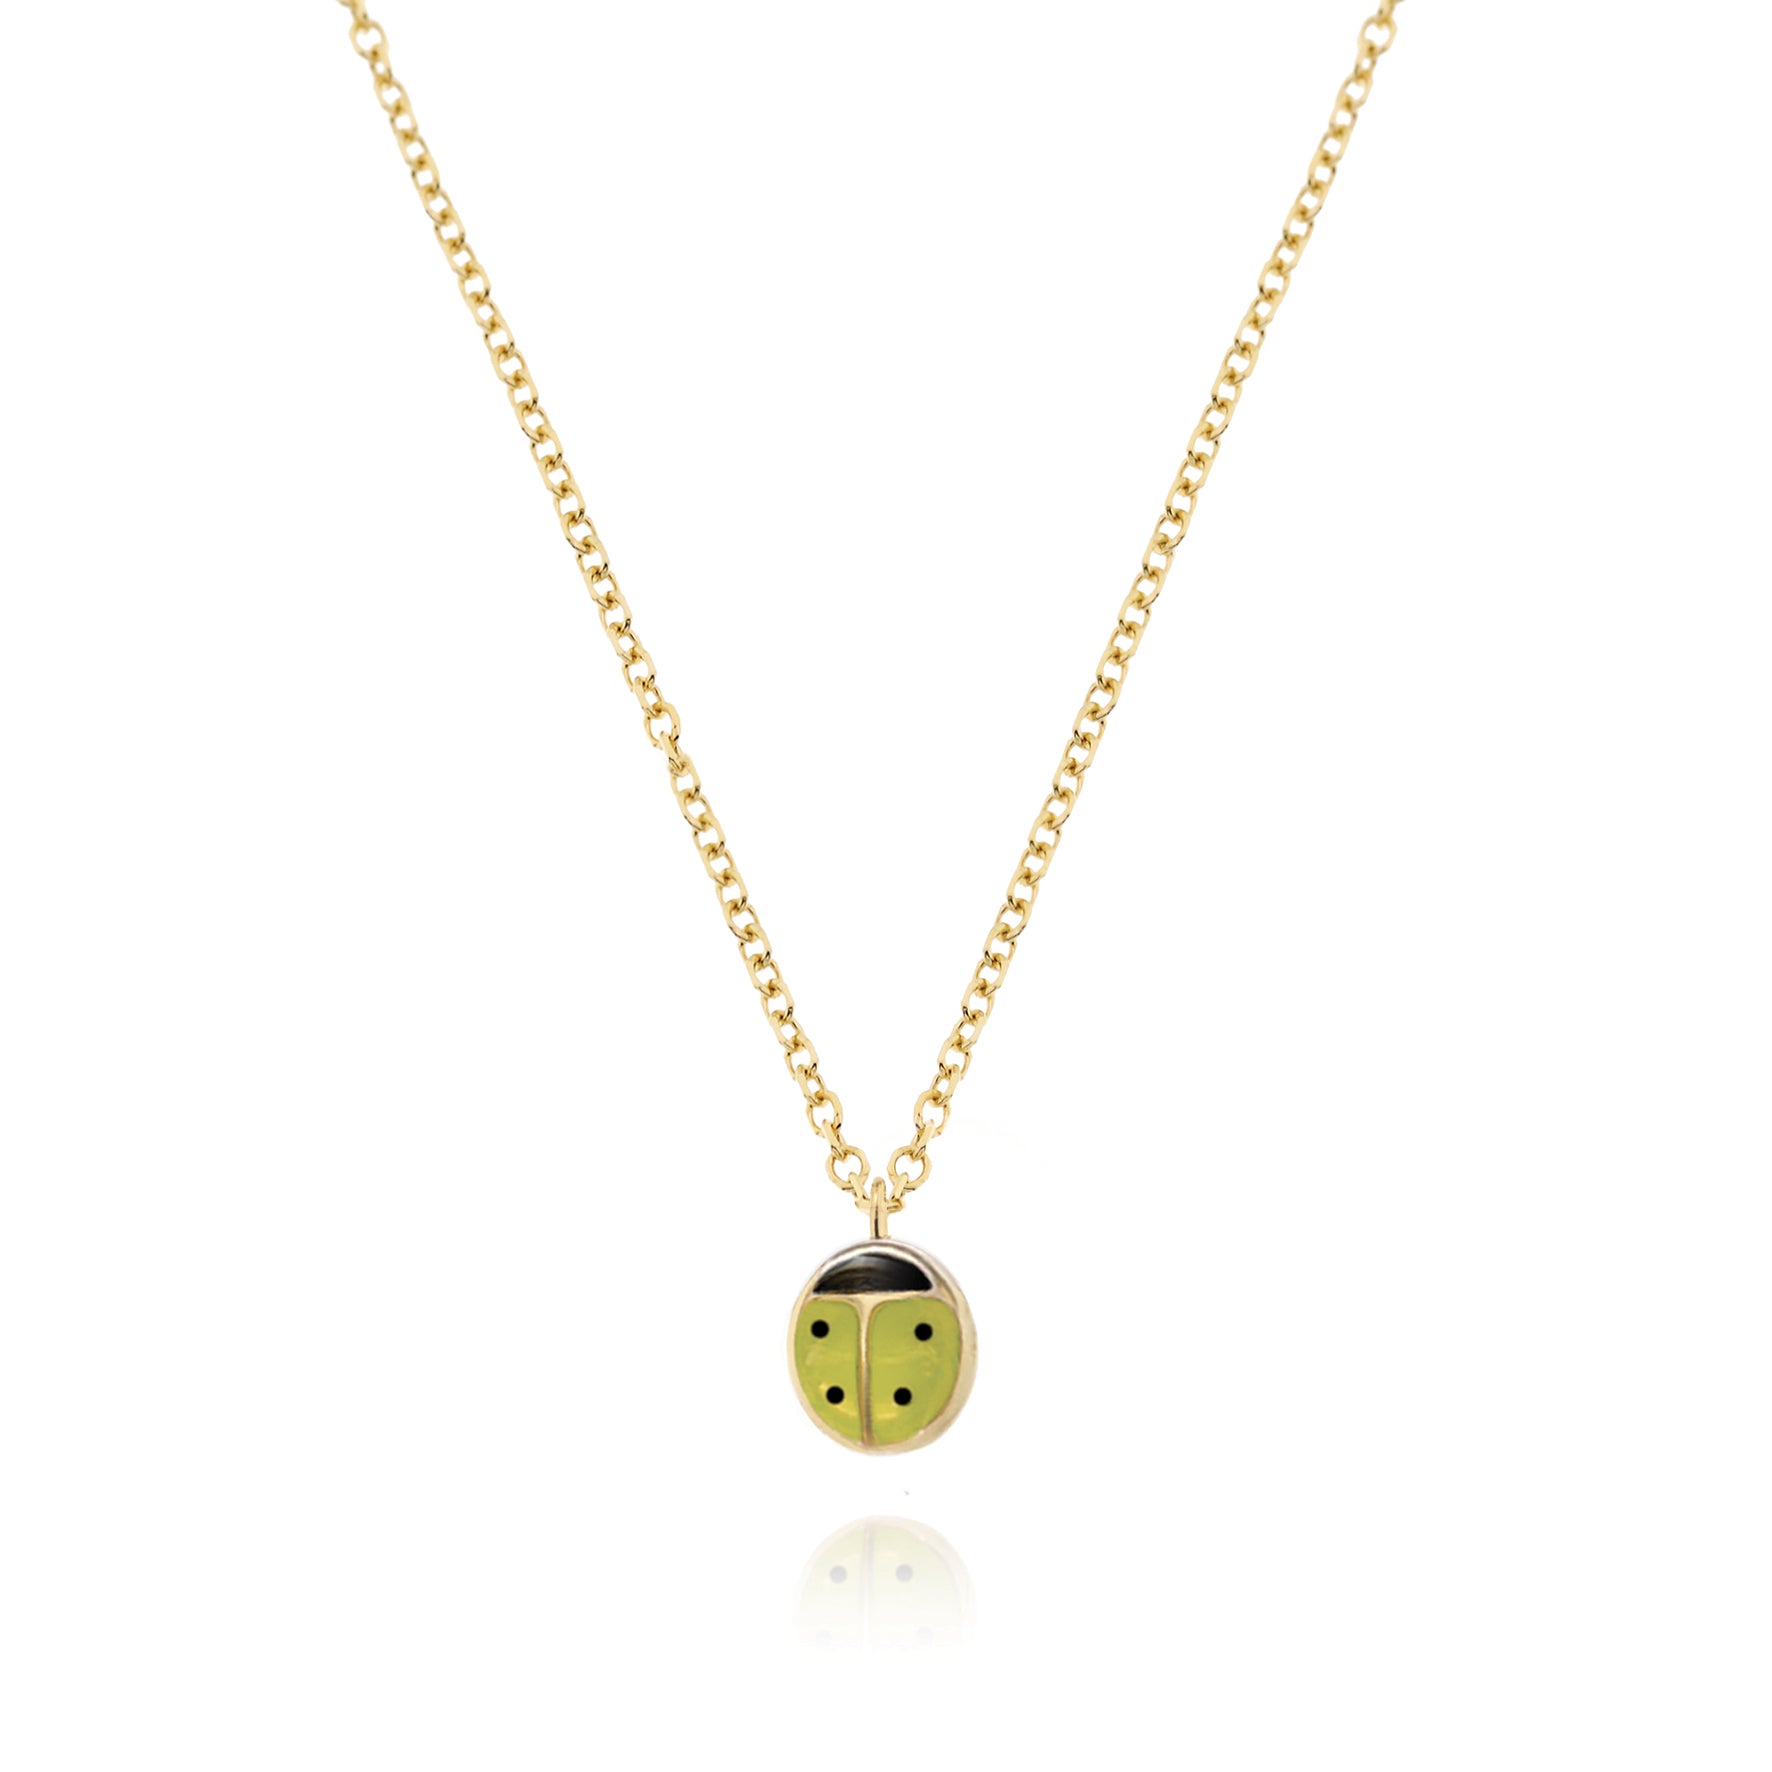 Real Gold Ladybug Necklace